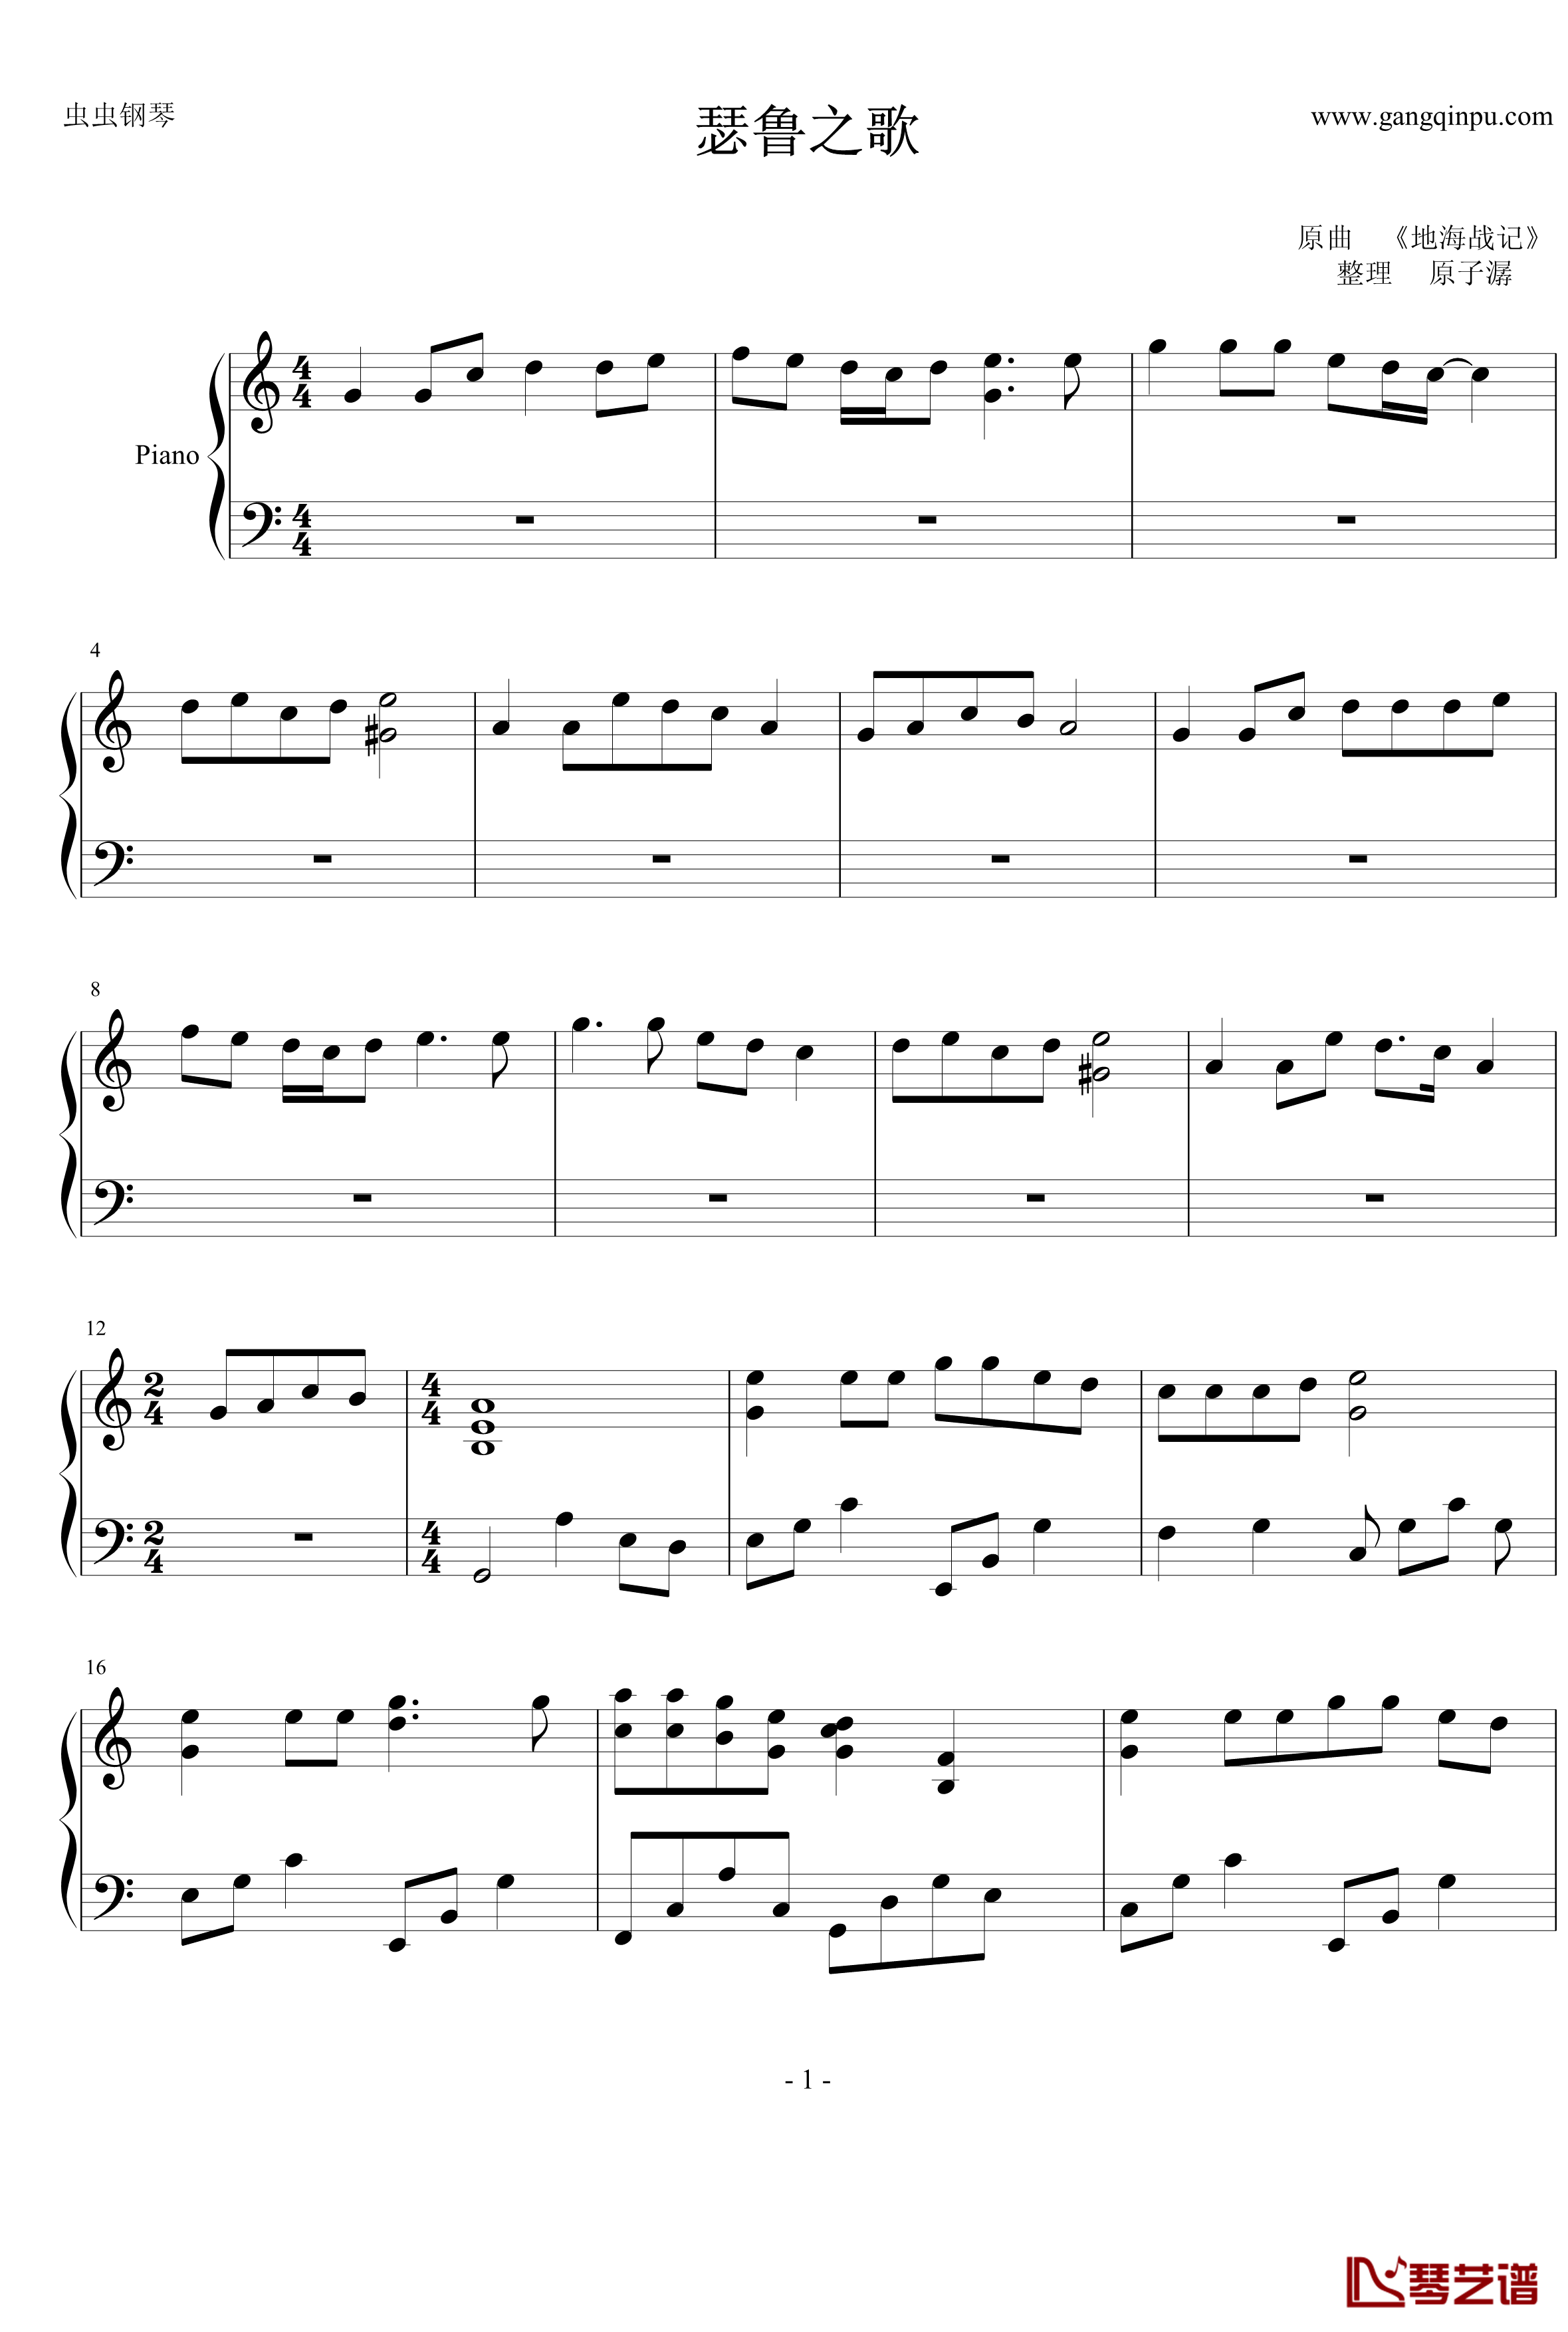 瑟鲁之歌钢琴谱-钢琴独奏版-宫崎吾朗